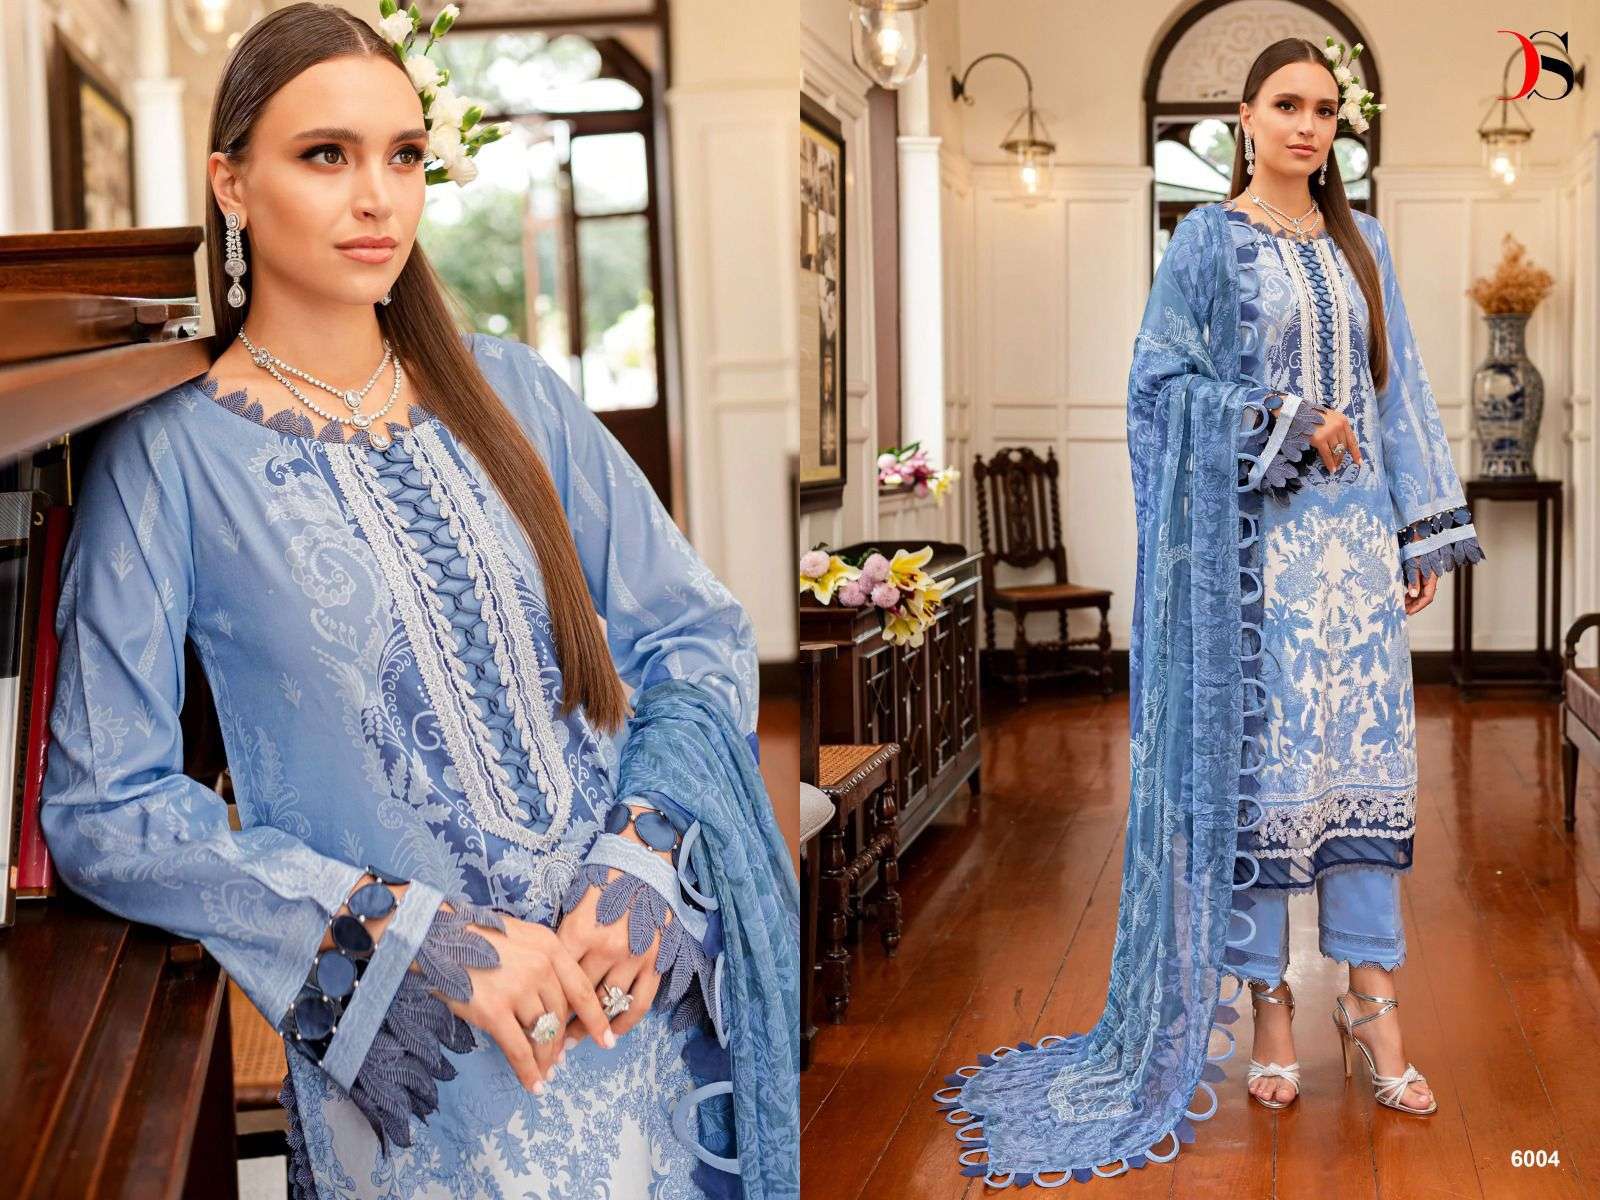 Deepsy Firdous Queens Court 6 Nx Chiffon Dupatta Pakistani Suits Wholesale catalog